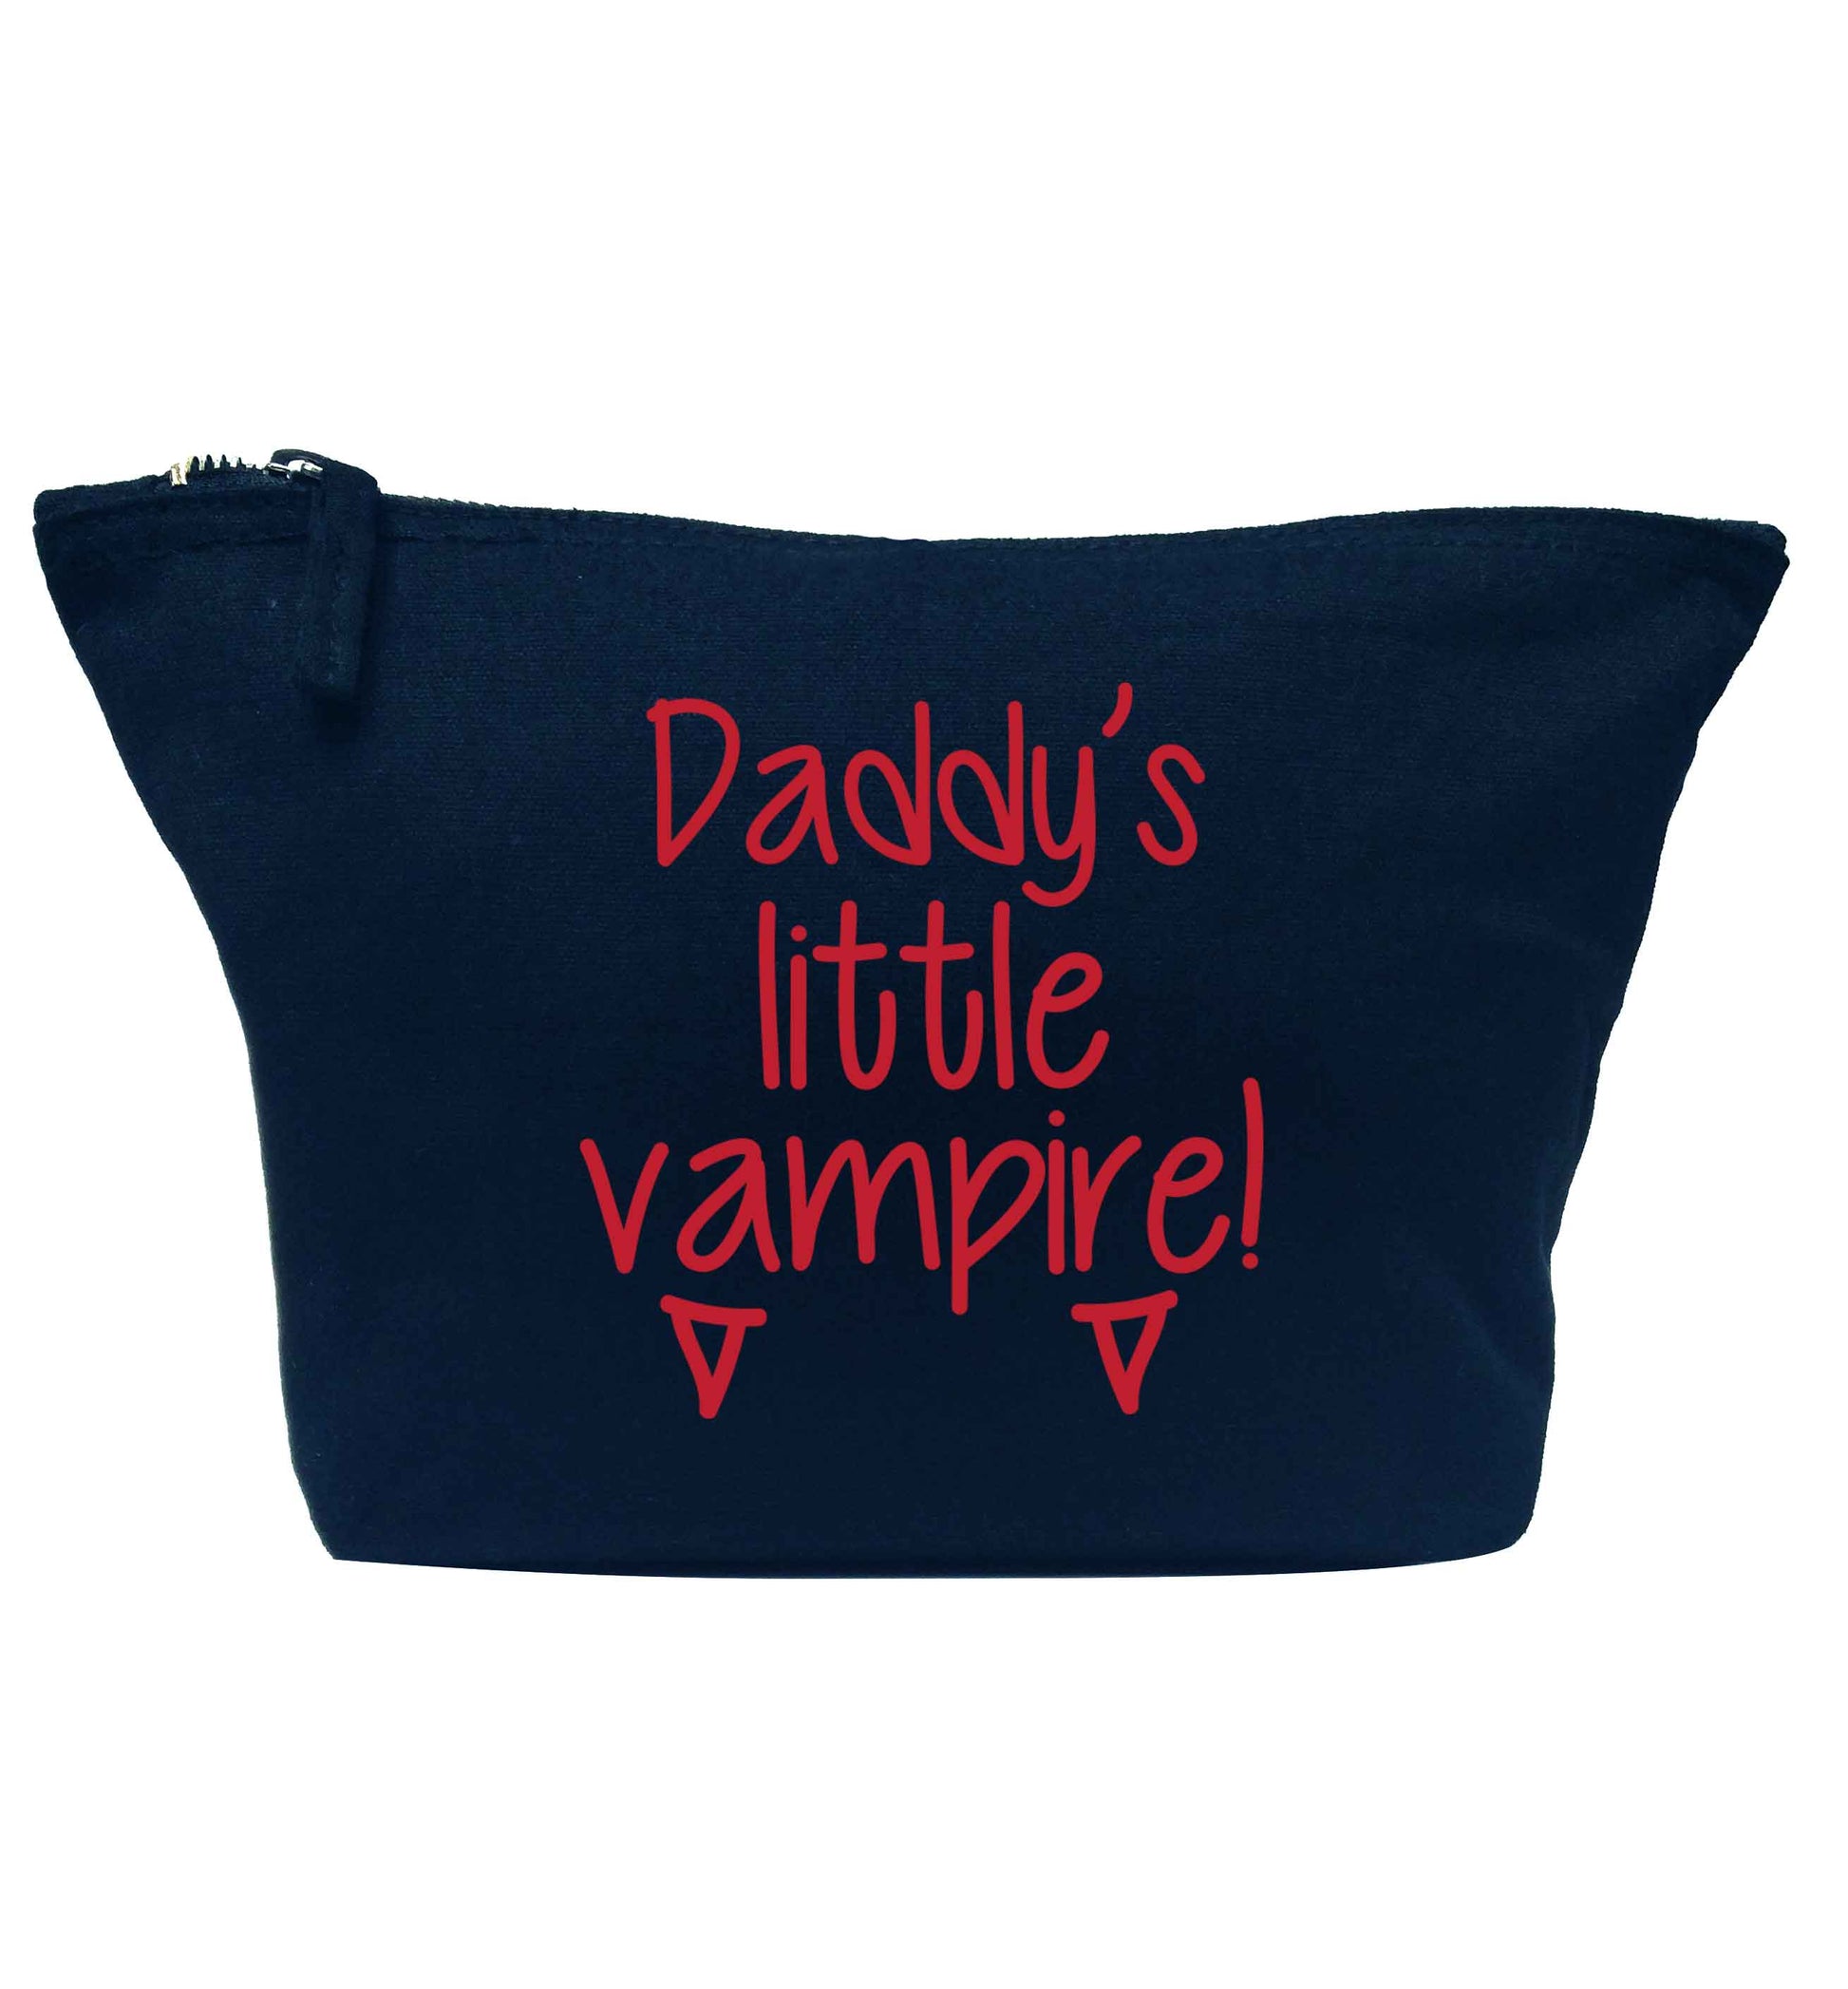 Daddy's little vampire navy makeup bag